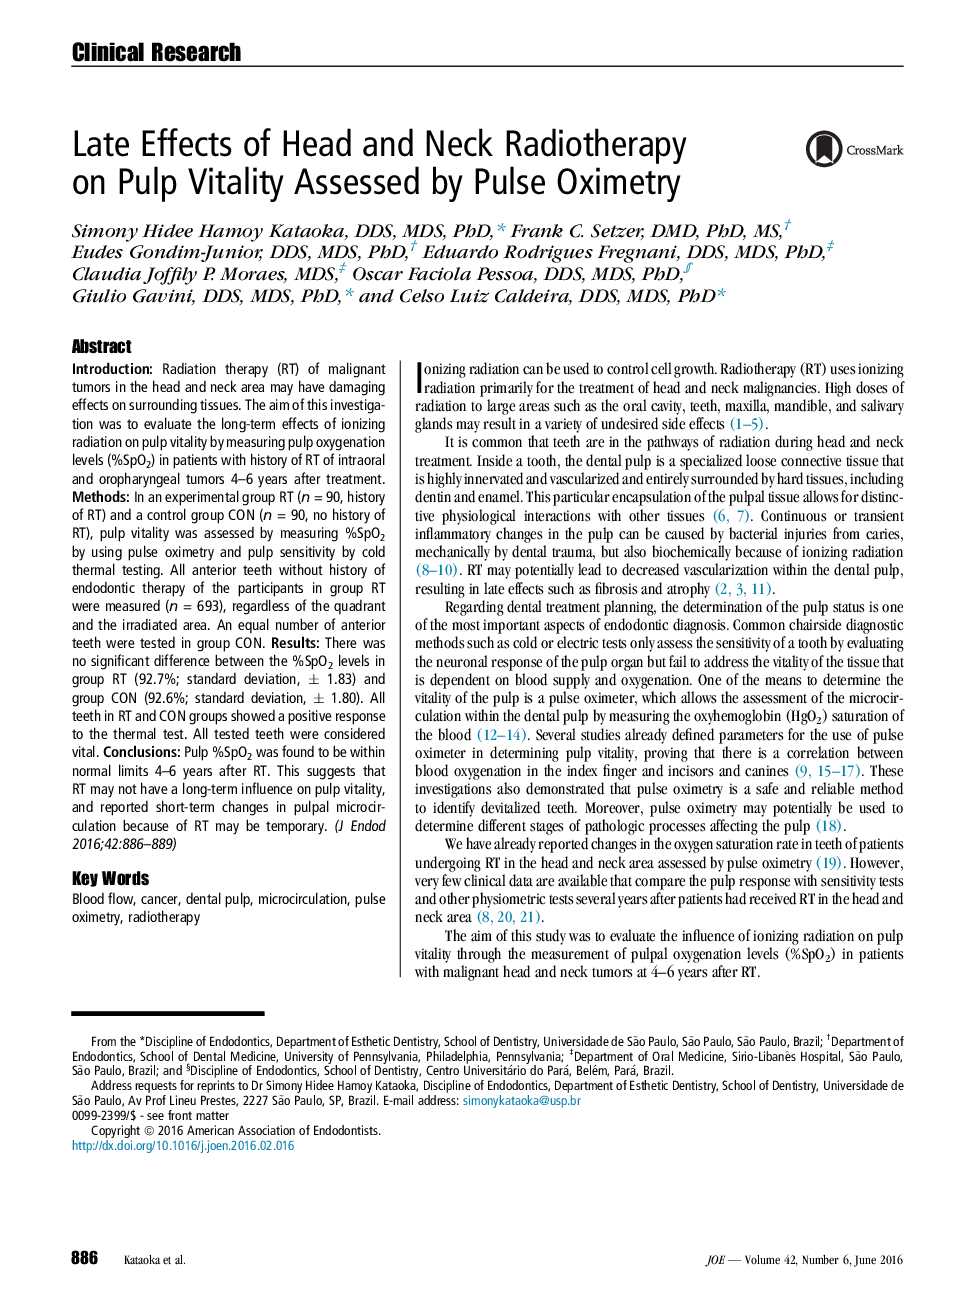 عوارض دیررس رادیوتراپی سر و گردن بر روی حیات  پالپ ارزیابی شده توسط پالس اکسیمتری